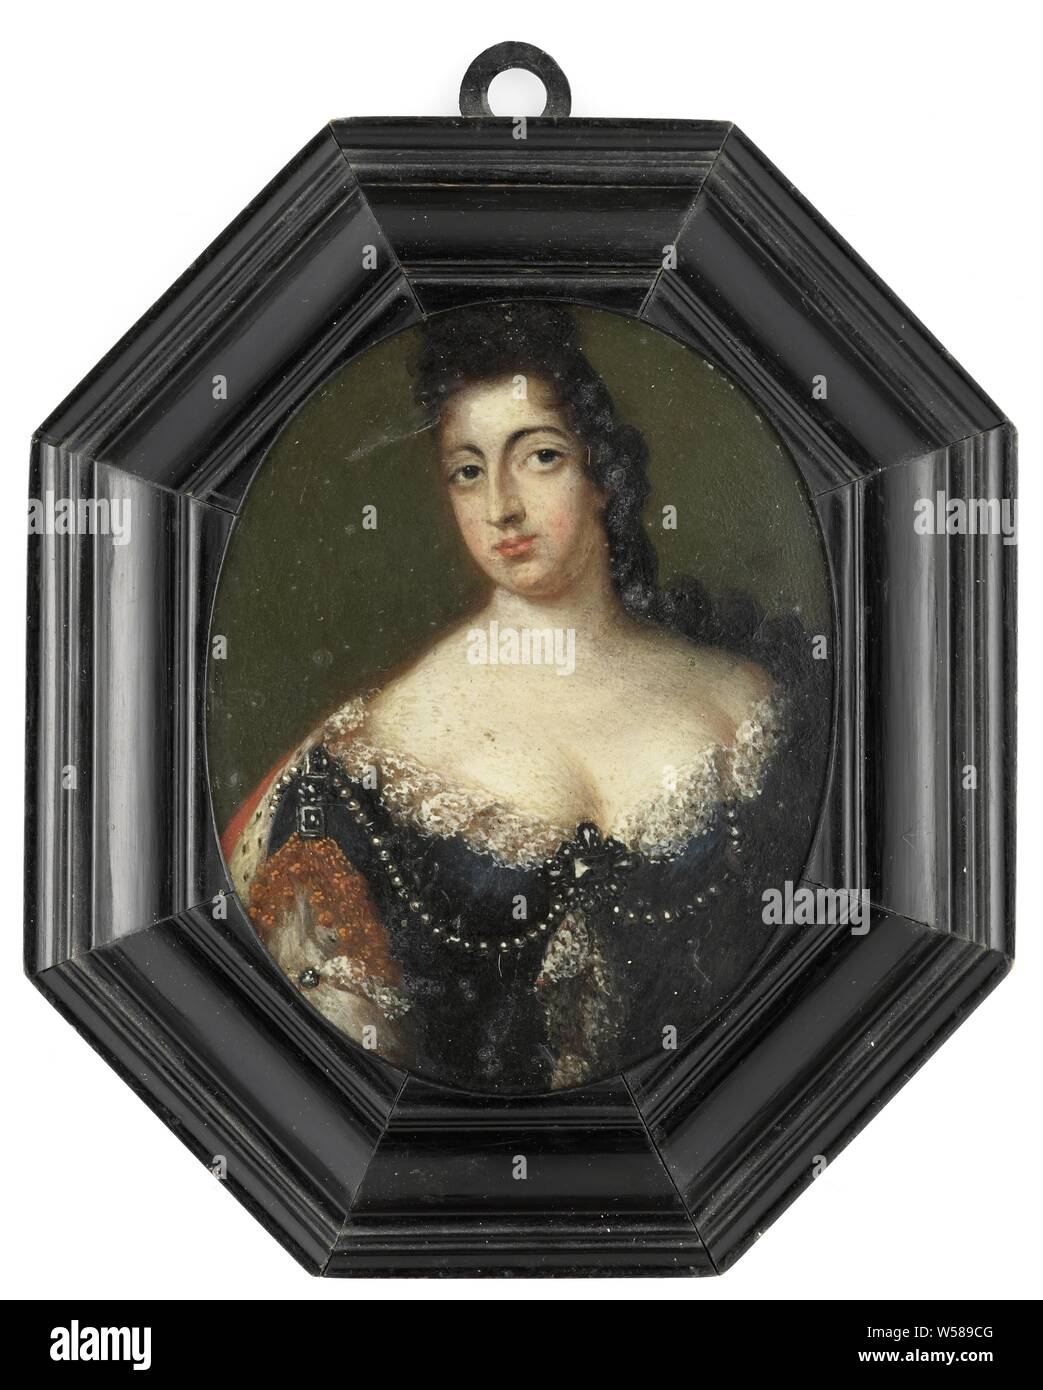 Ritratto di Maria, principessa o arancione, consorte di Guglielmo III, il ritratto di Maria Stuart (1662-95), moglie di Guglielmo III. Busto in ovale, lo sguardo rivolto verso l'alto. La Scozia e Irlanda), anonimo, Paesi Bassi del Nord, c. 1695, stagno (metallo), pittura a olio (vernice), LEGNO (materiale vegetale), h 9.1 cm × W 7.3 cm h 13.4 cm × W 10,6 cm × d 1,6 cm Foto Stock